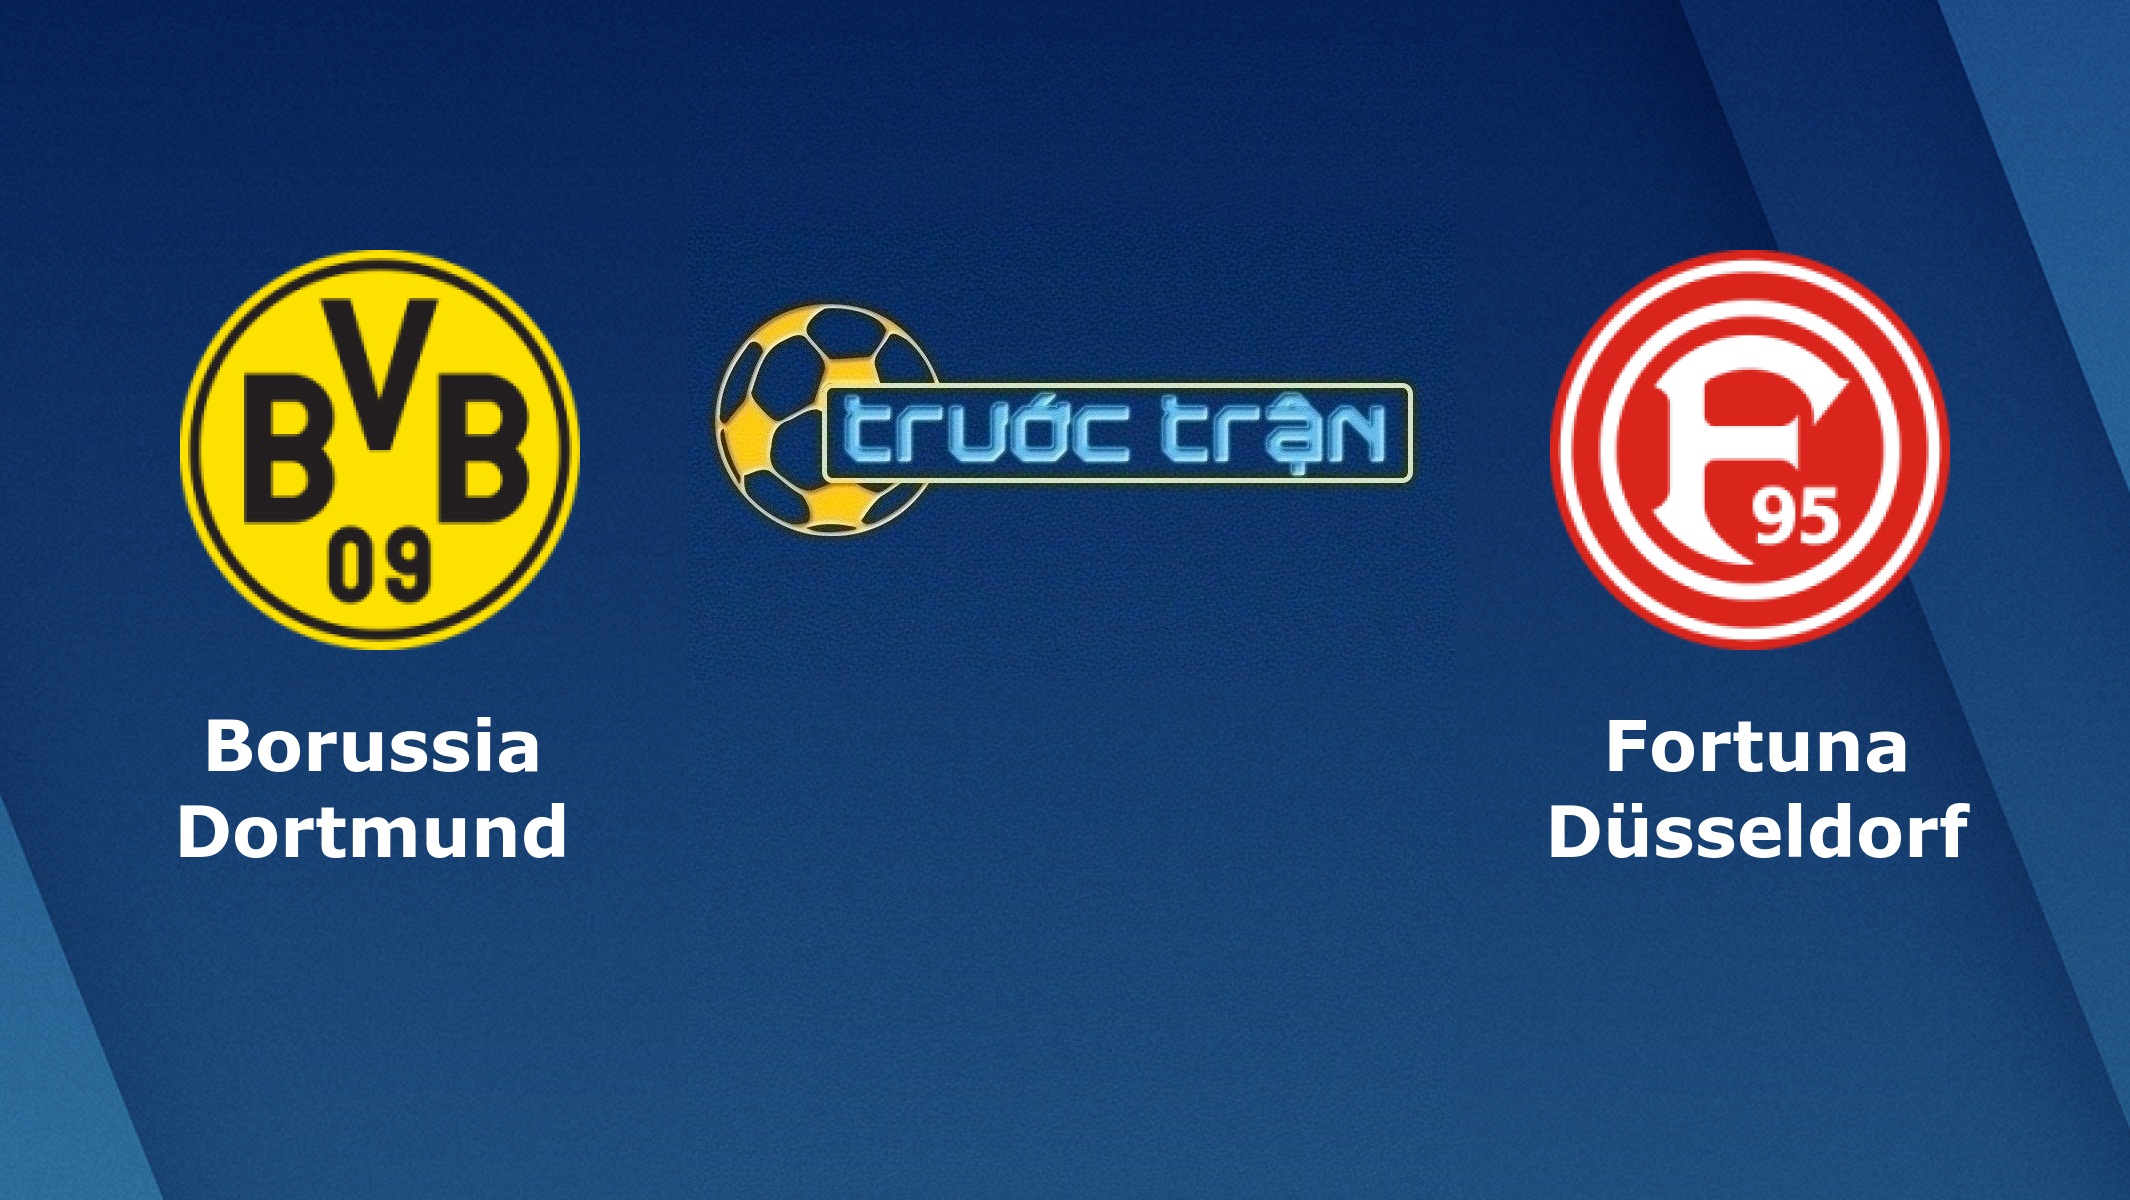 Dortmund vs Fortuna Dusseldorf – Tip kèo bóng đá hôm nay – 07/12